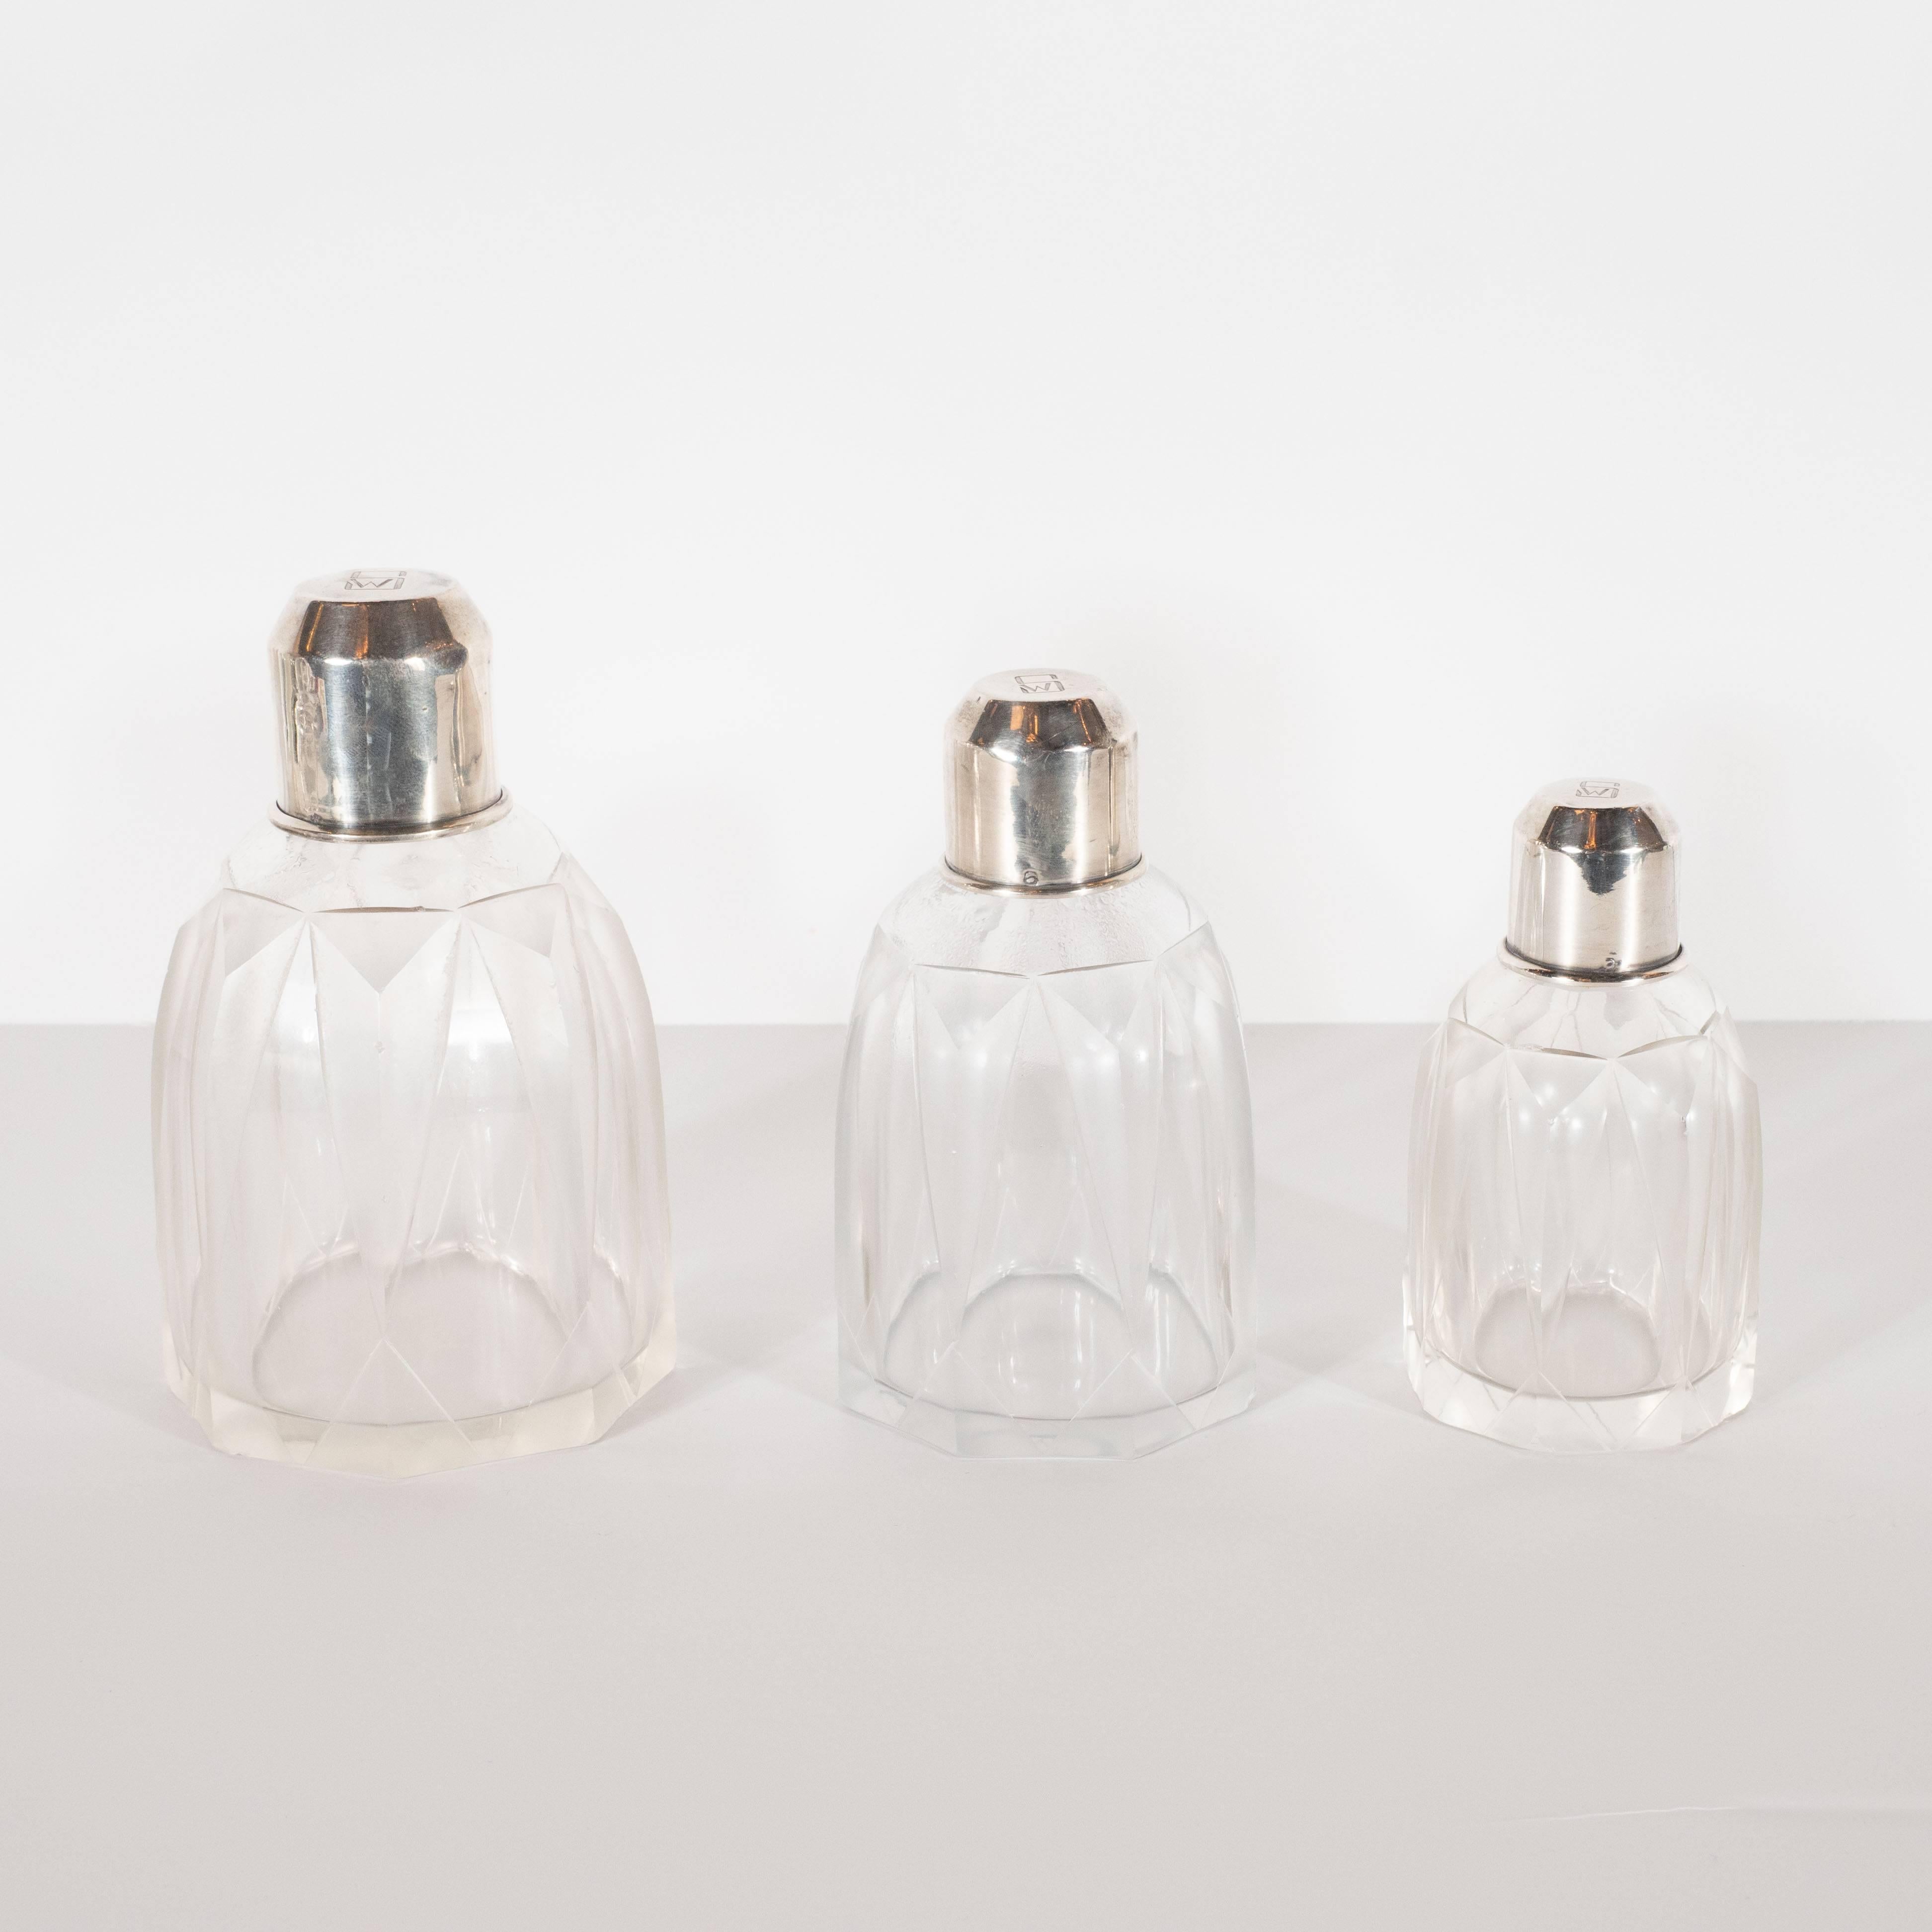 Dieses elegante Art-Déco-Parfümset aus dem Maschinenzeitalter wurde um 1930 in Frankreich hergestellt, wo die besten Silberschmiede dieser Zeit ansässig waren. Es handelt sich um drei achteckige Gefäße unterschiedlicher Größe mit reliefierten